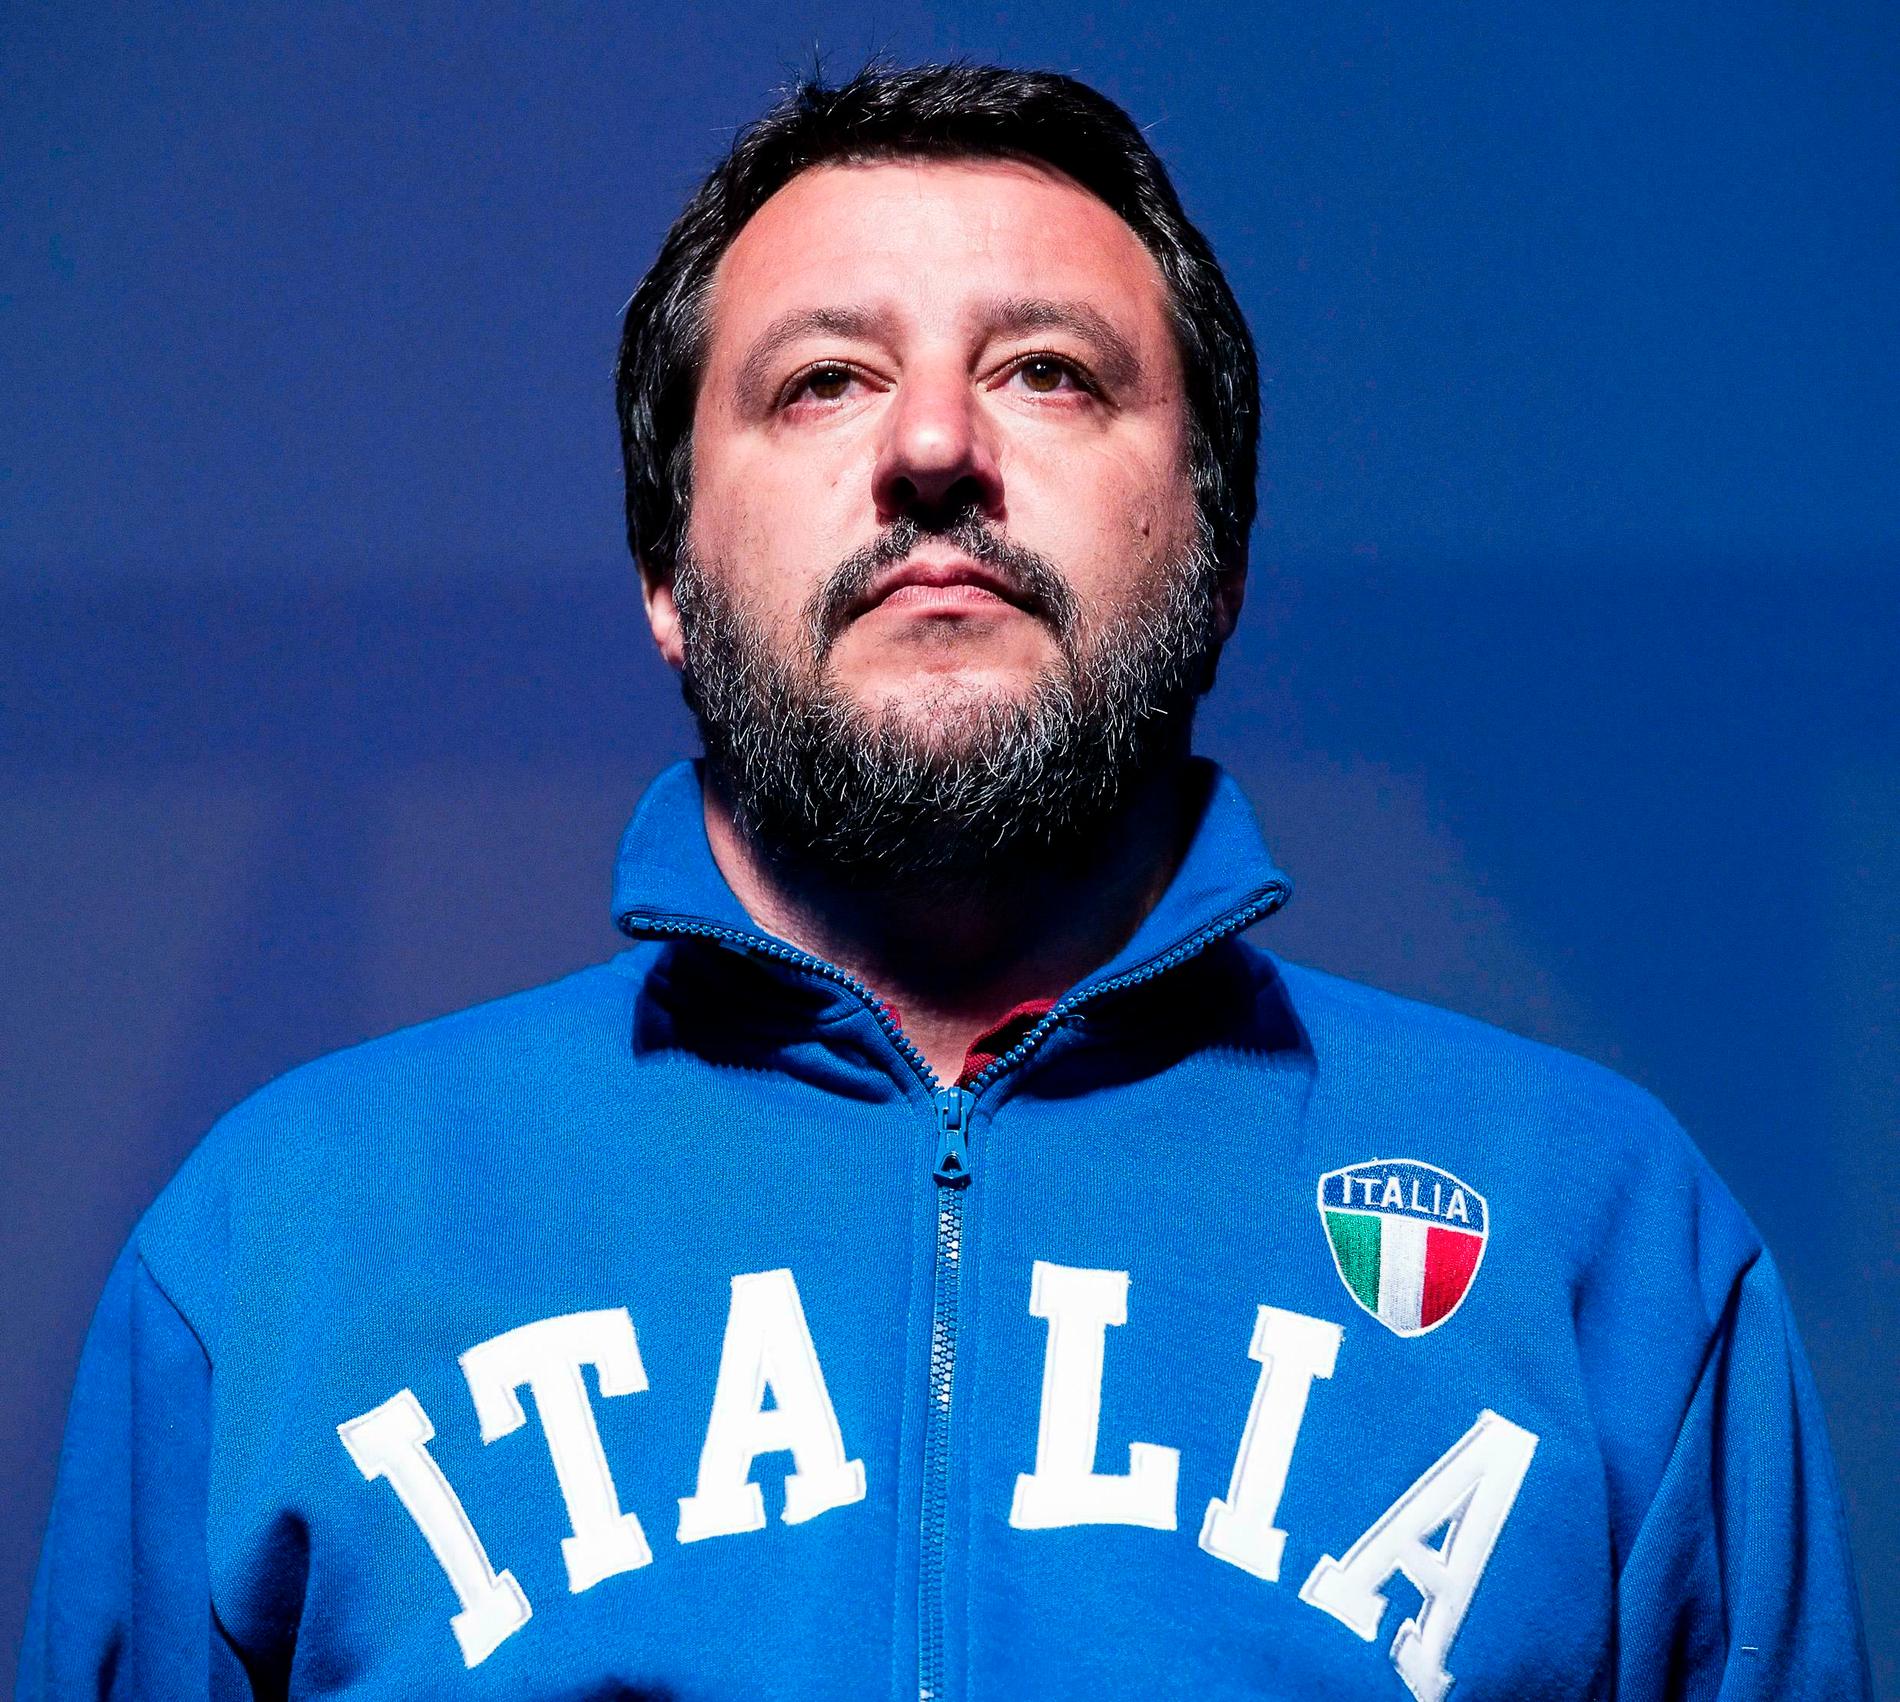 Partiledaren och inrikesminister Matteo Salvini klär sig folkligt snarare än i kostym och slips, hånar intellektuella och driver en kampanj mot flyktingar. På bara ett par år har han lyckats öka stödet för Lega från fyra procent till vad som väntas bli över trettio procent.